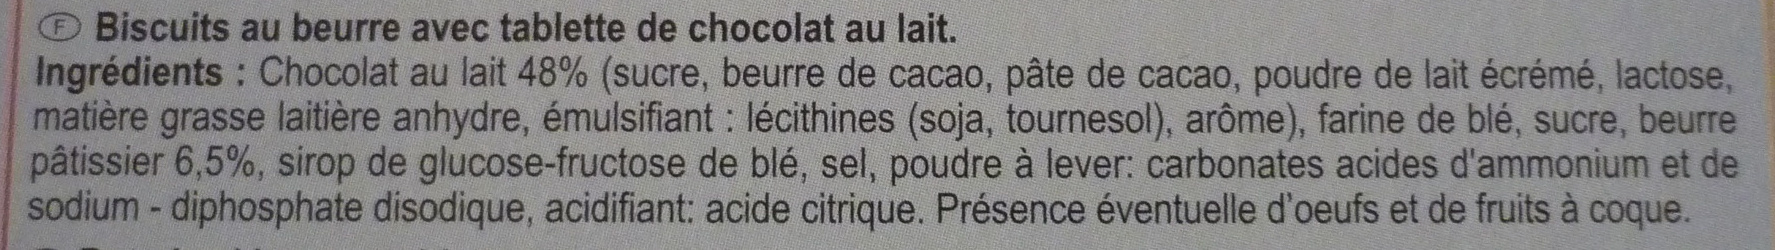 POCKET LE PETIT BEURRE TABLETTE Chocolat au lait - Ingredienti - fr